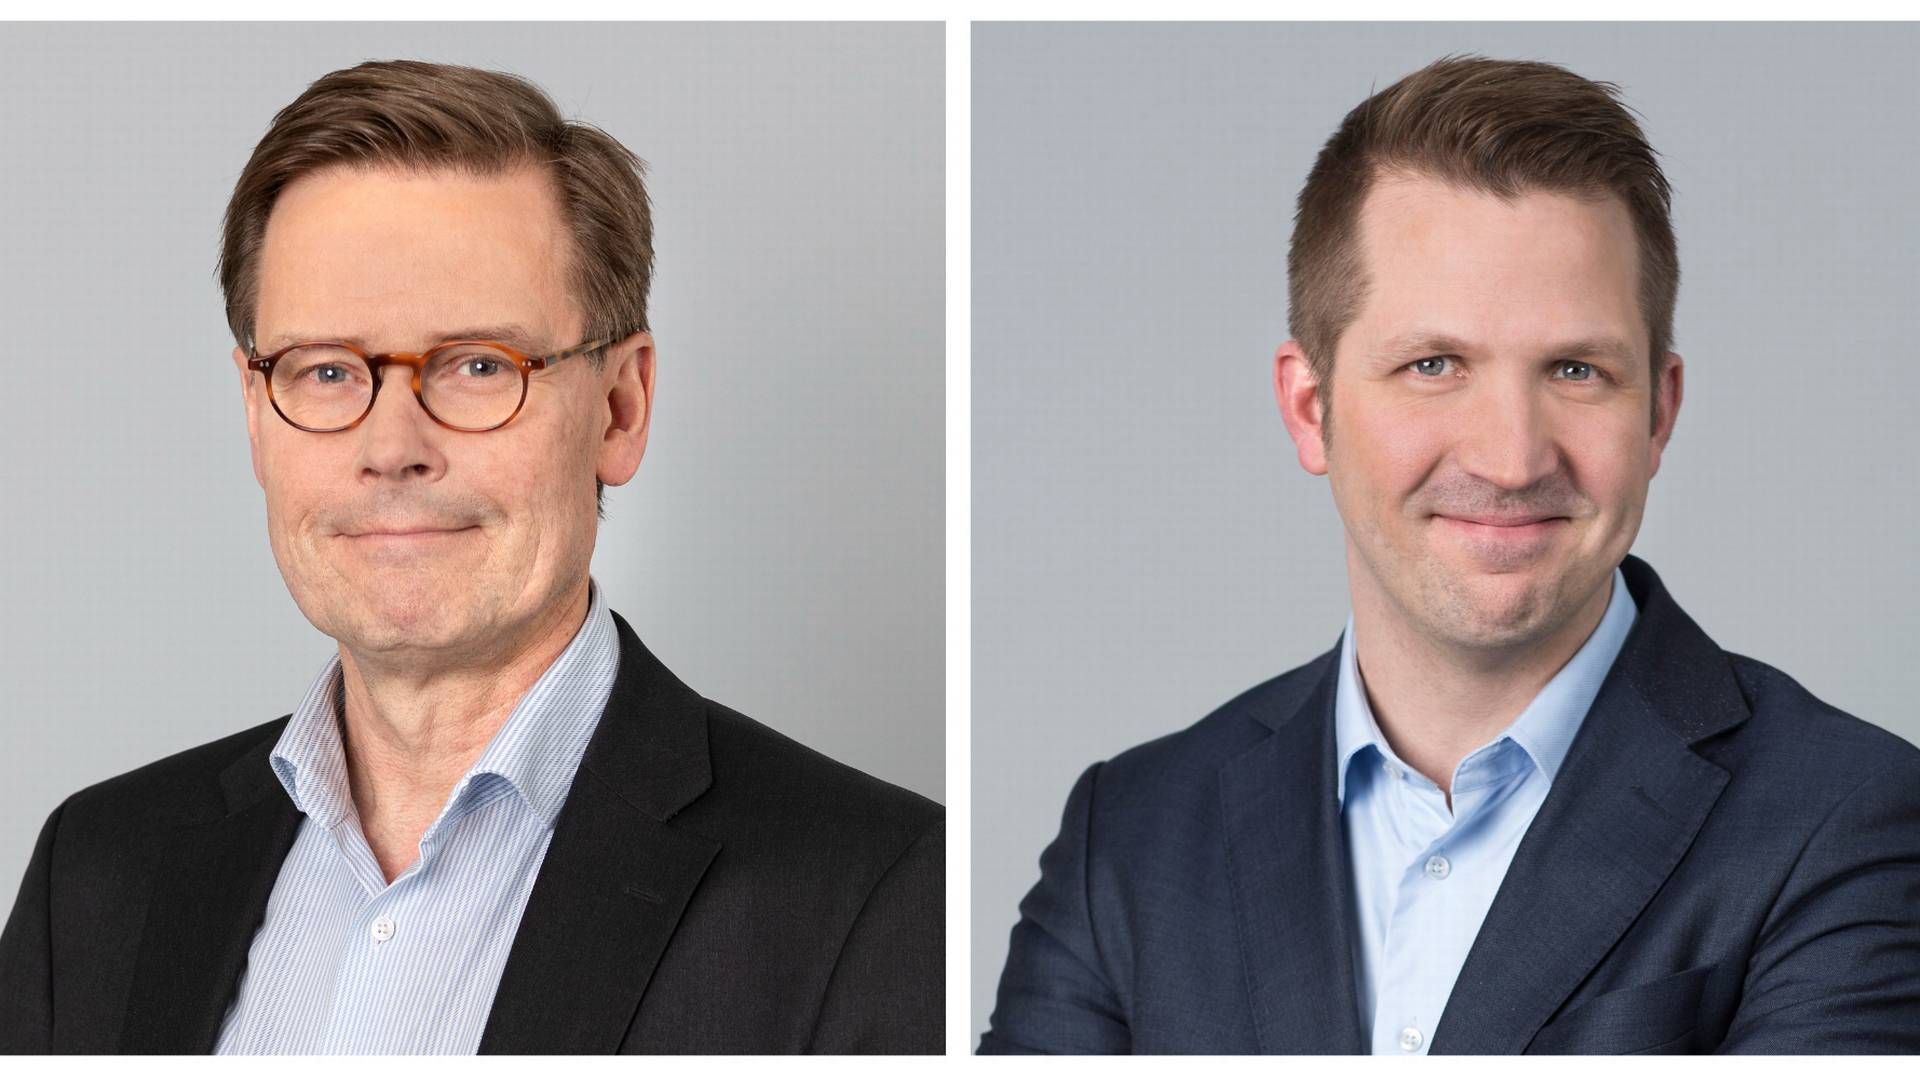 Mika Heikkilä (l.), CFO and Iikka Kuosa (r.), SVP, Products & IT at Finland's S-Bank. | Photo: PR S-Bank.